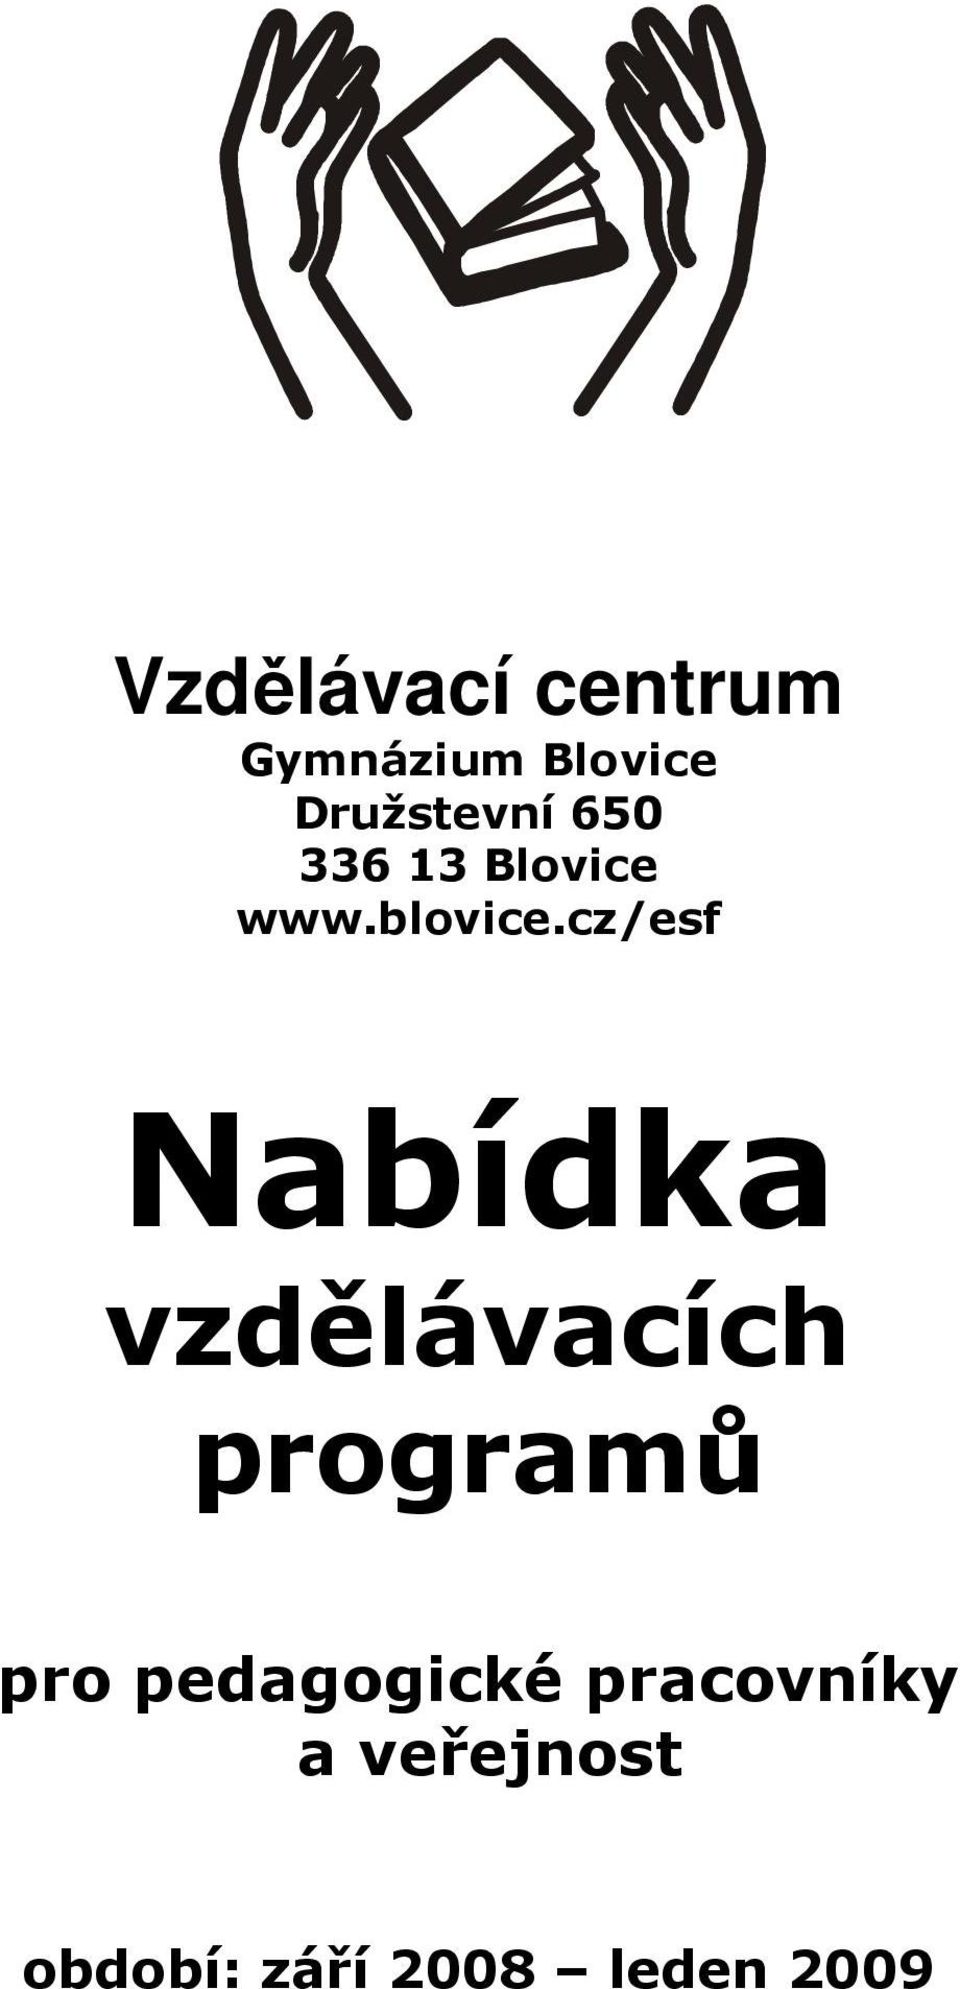 cz/esf Nabídka vzdělávacích programů pro